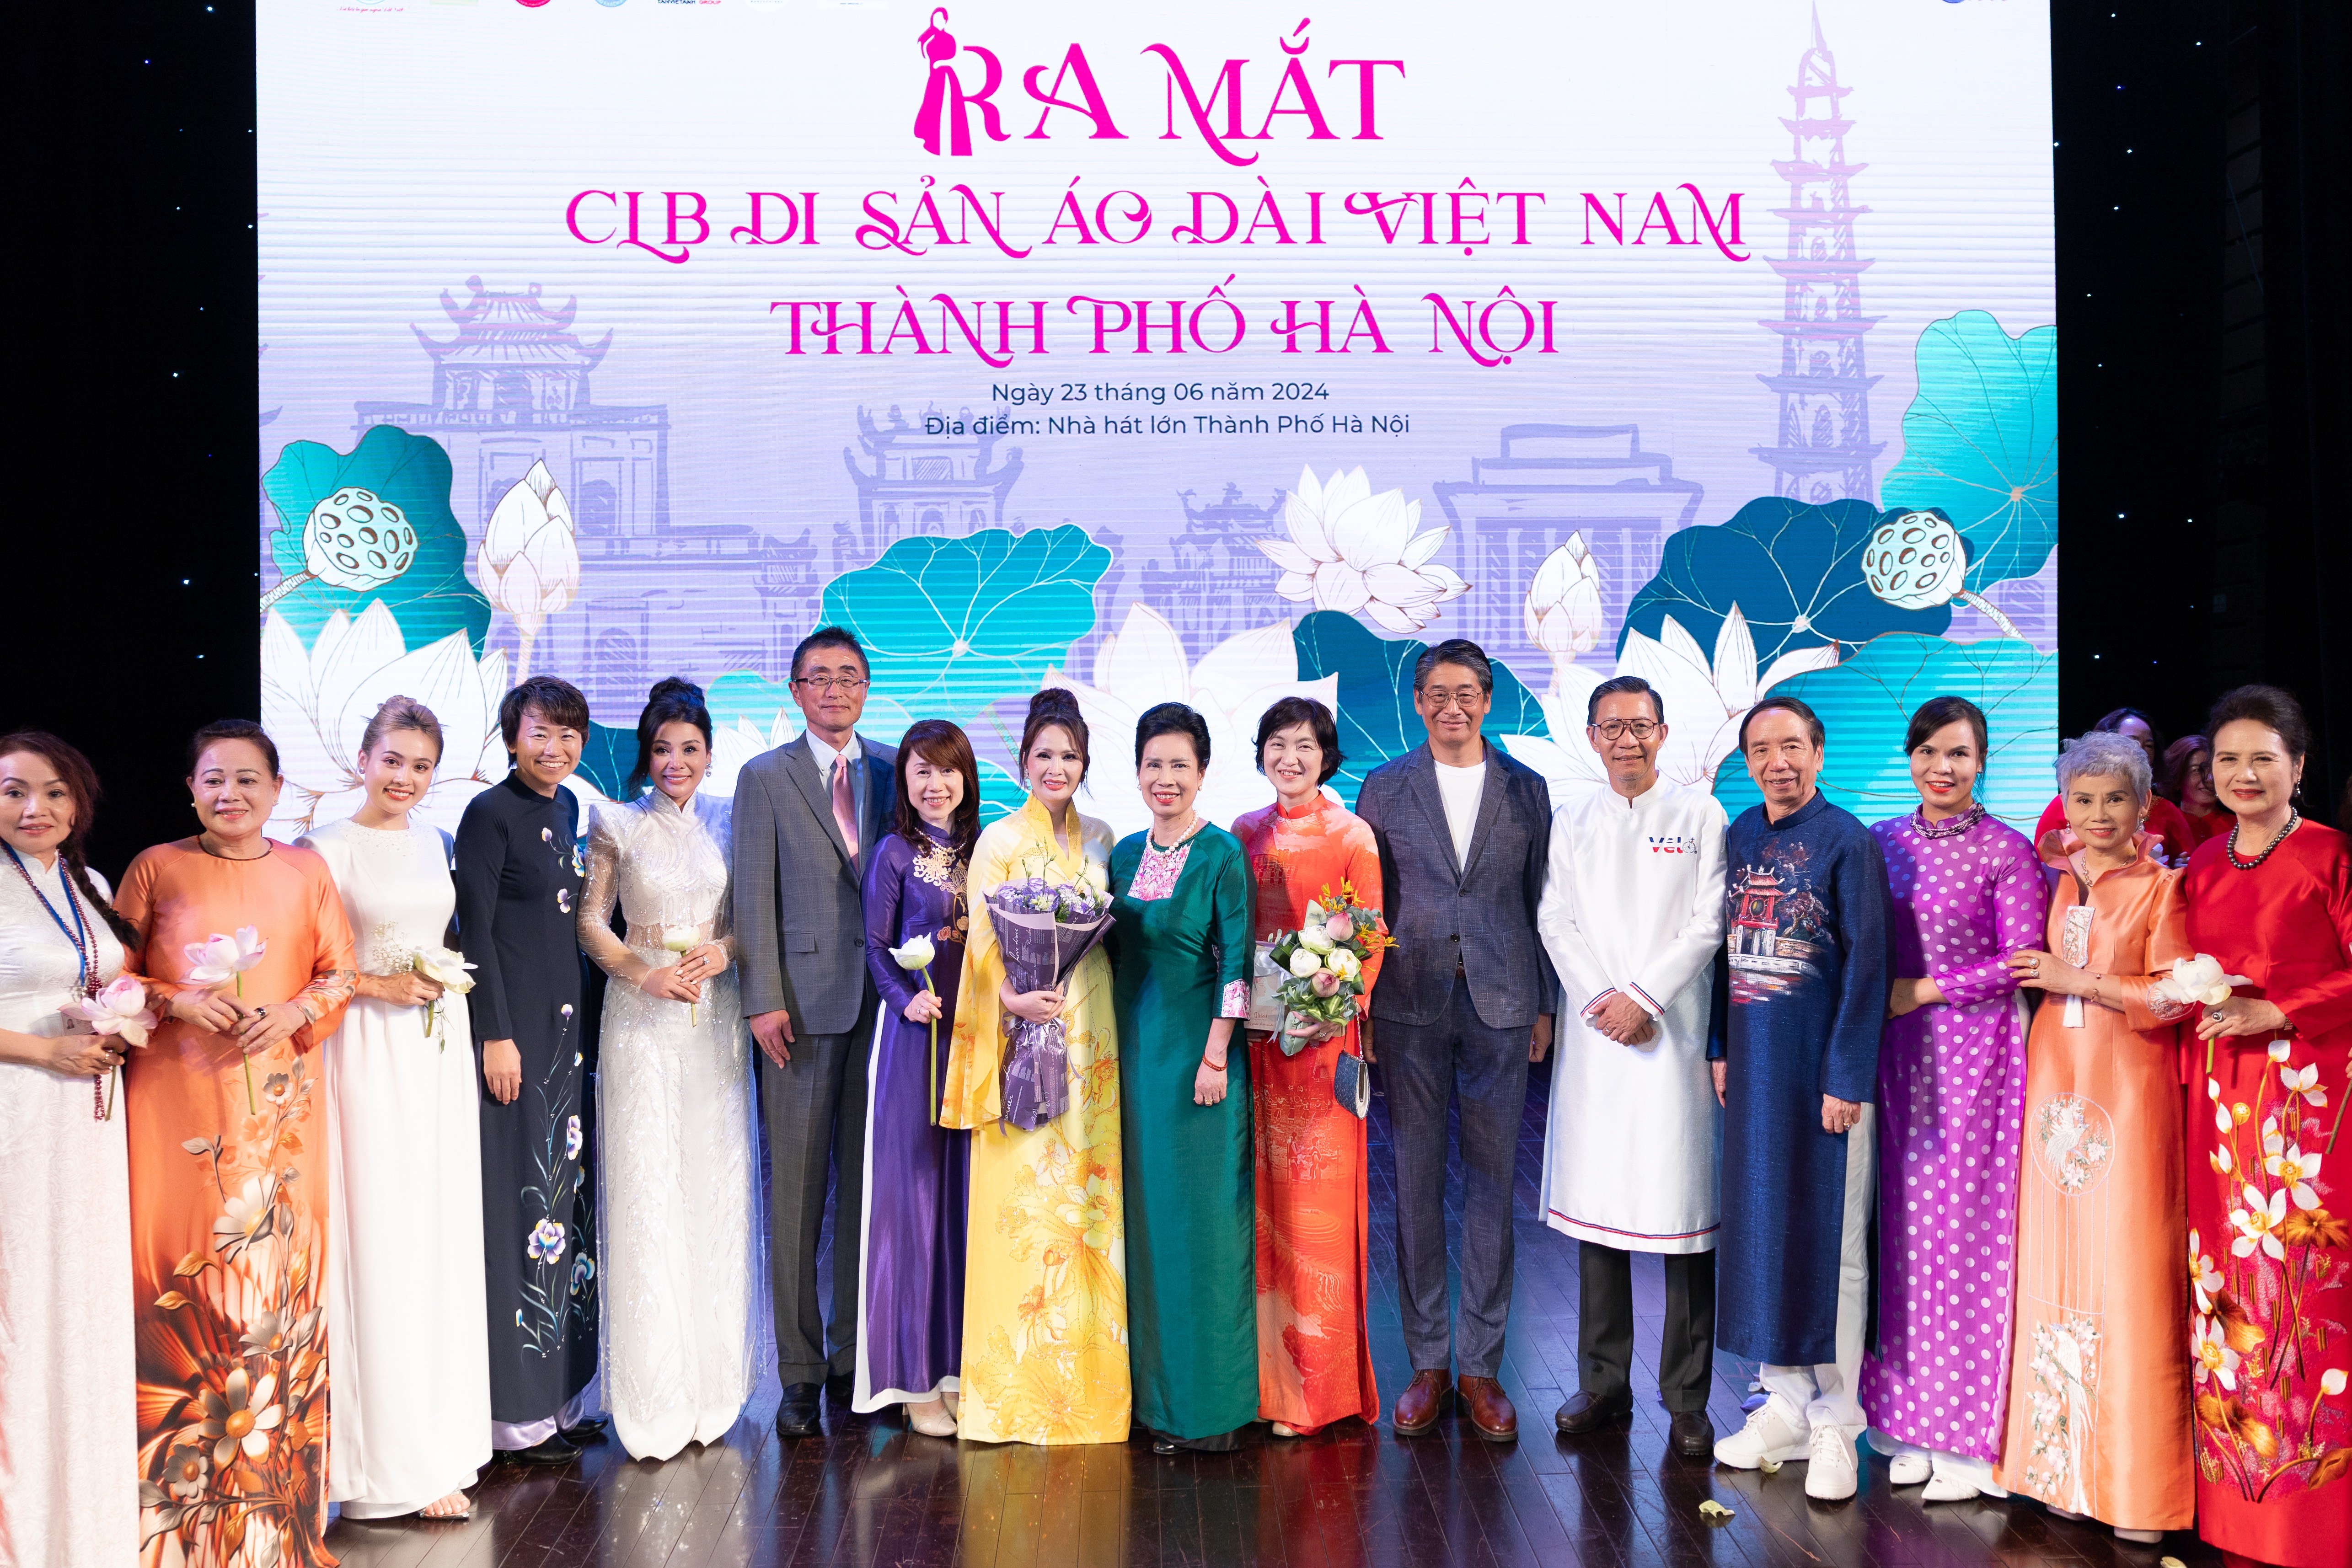 Chính thức ra mắt Câu lạc bộ Di sản Áo dài Việt Nam thành phố Hà Nội